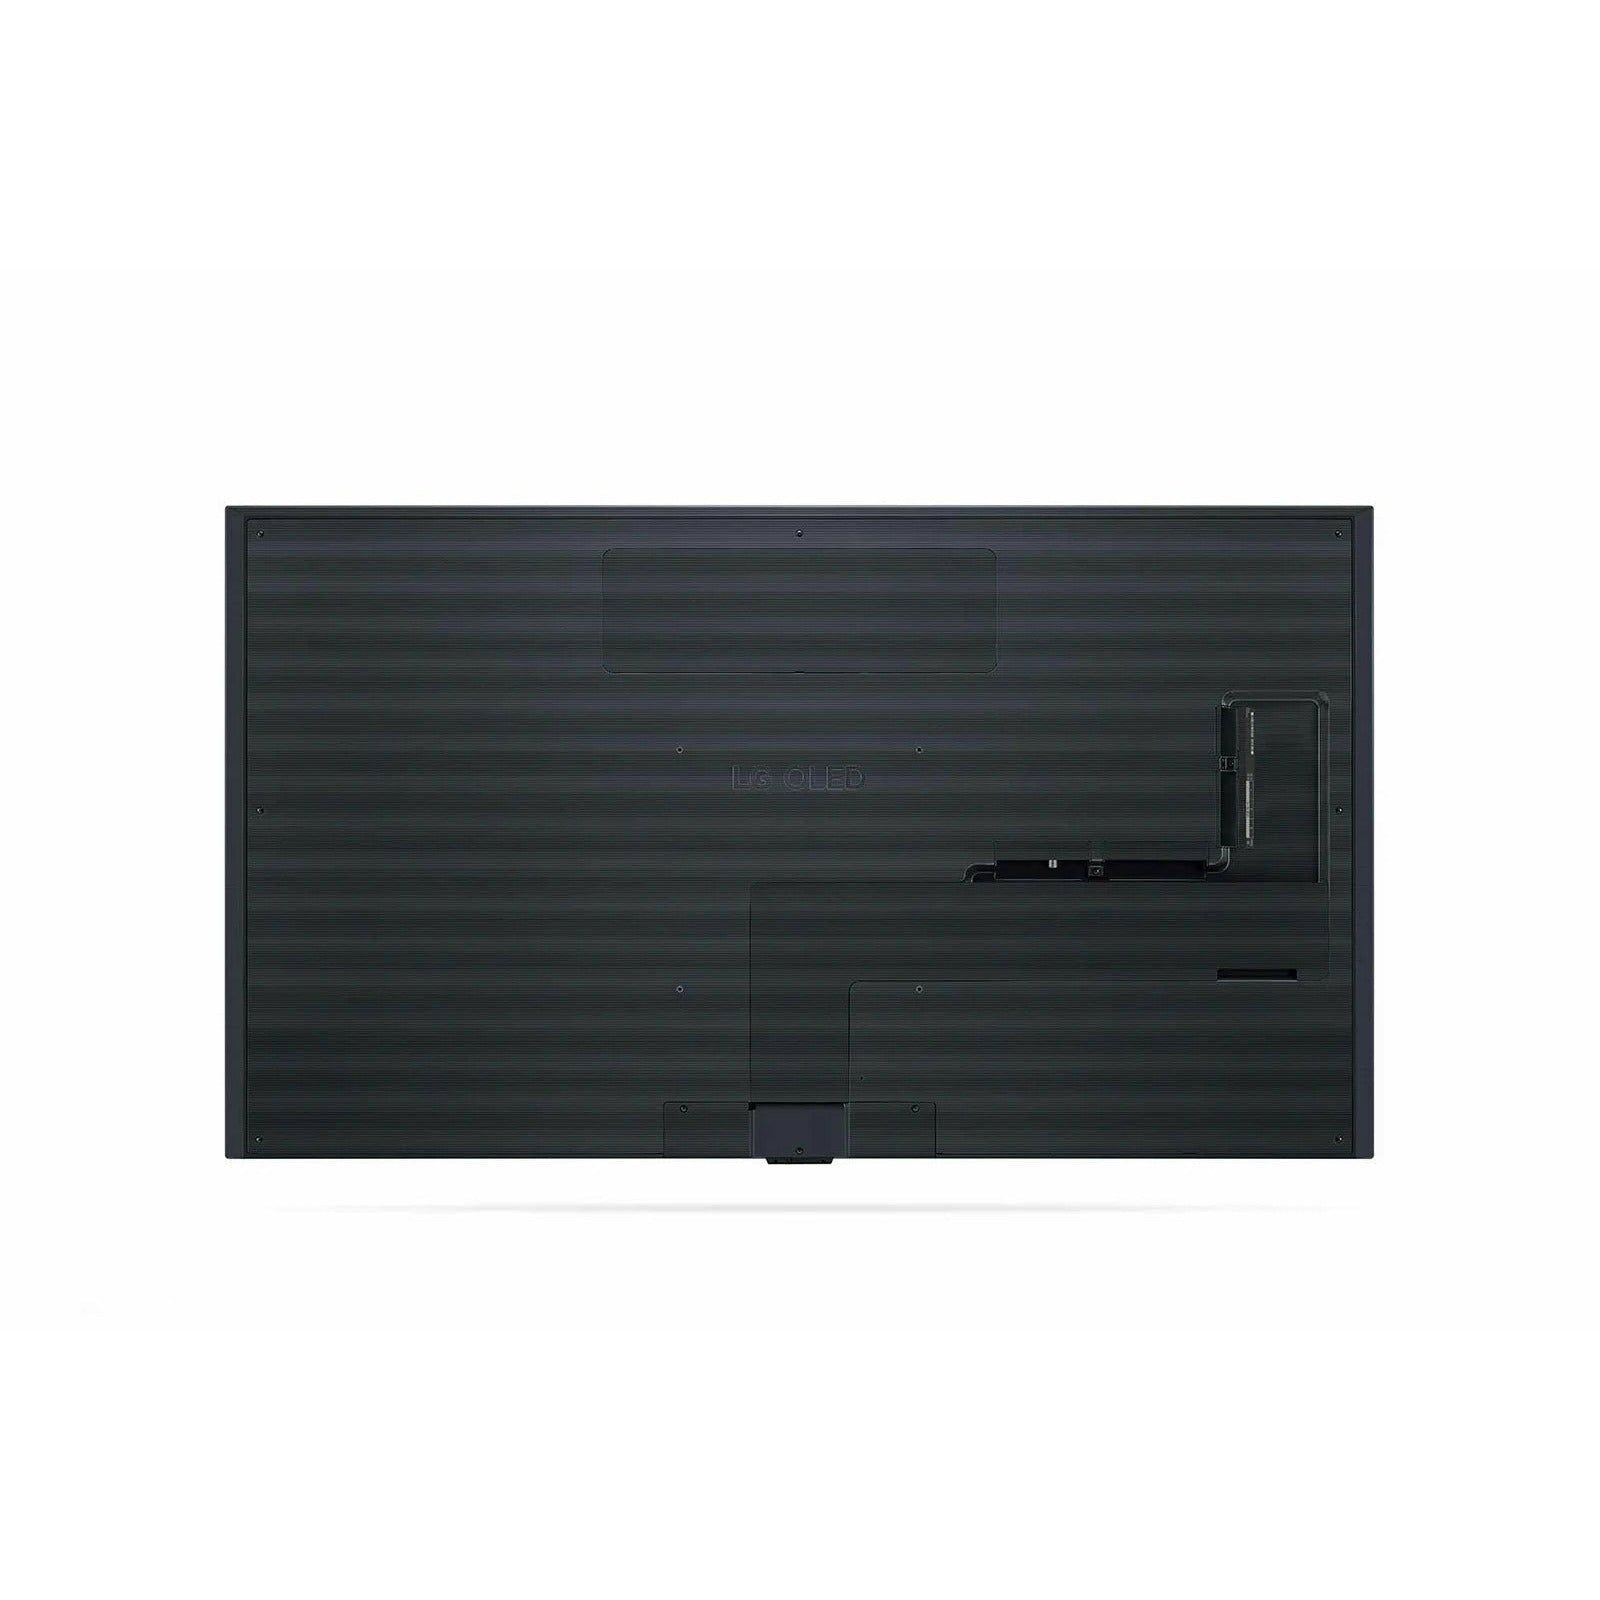 LG 65GX OLED TV - 65" - New World